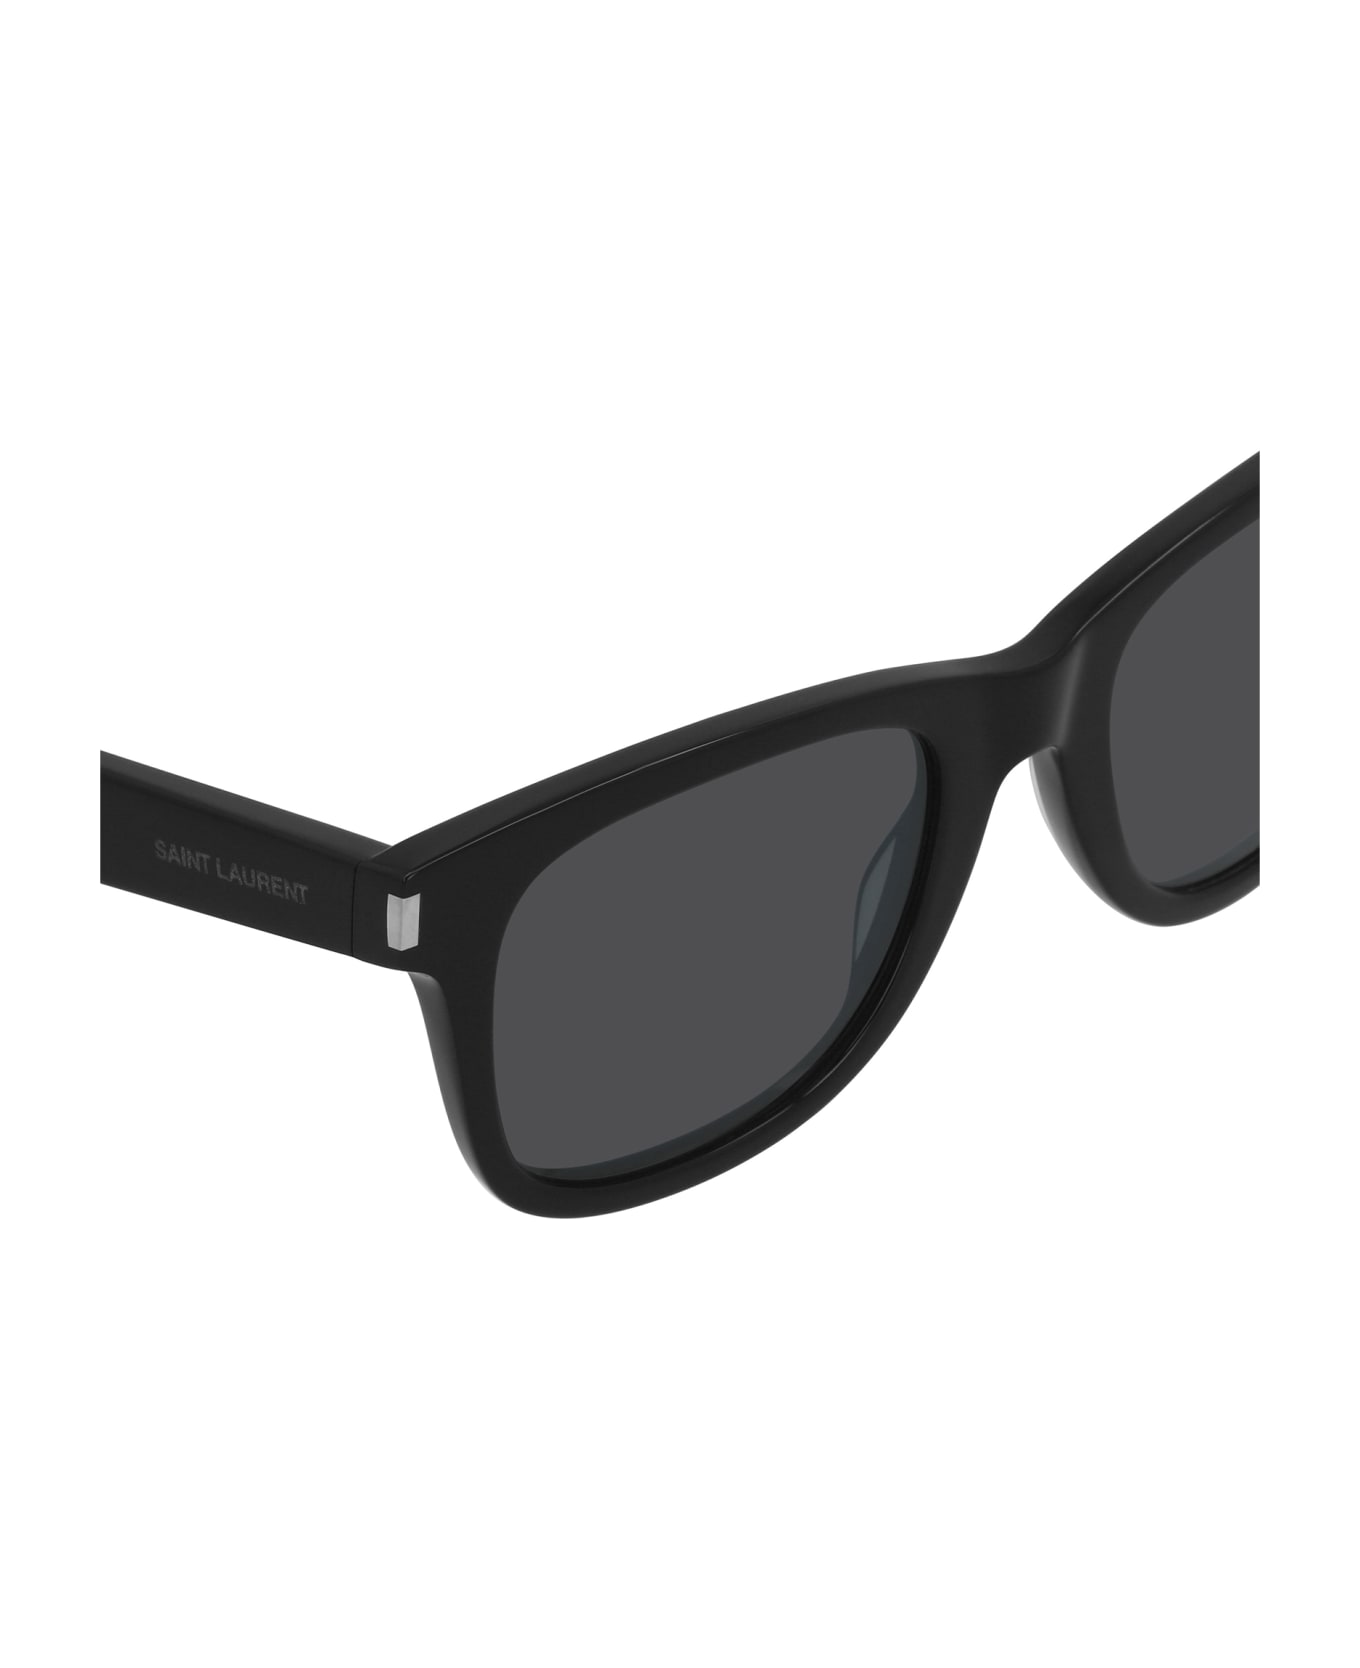 Saint Laurent Eyewear Sl 51 Black Sunglasses - Black サングラス